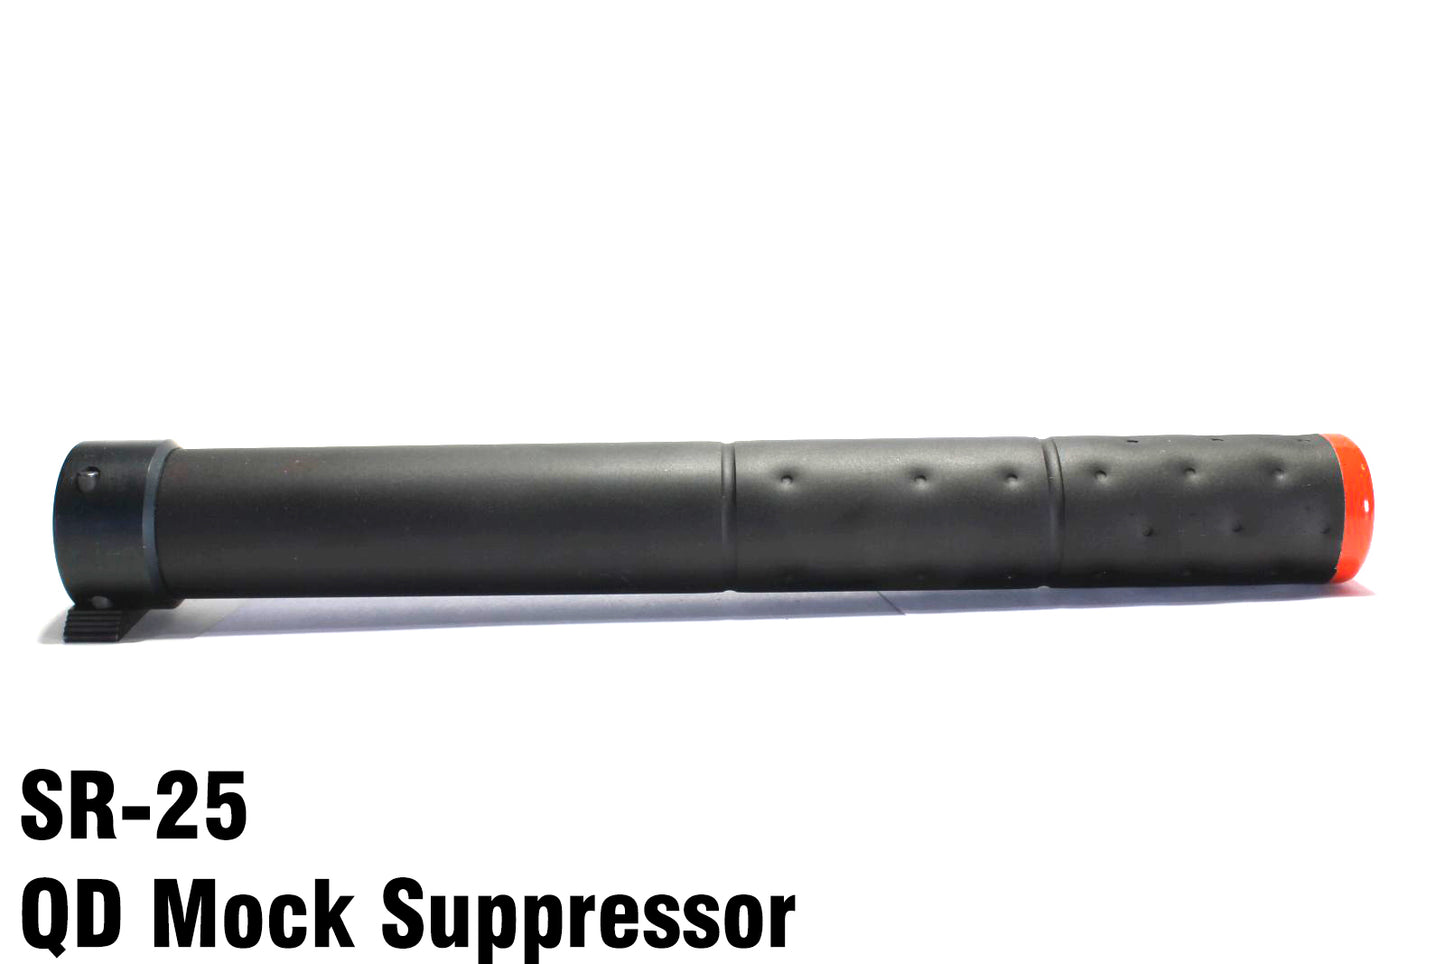 Premium SR-25 Full Metal QD Mock Suppressor